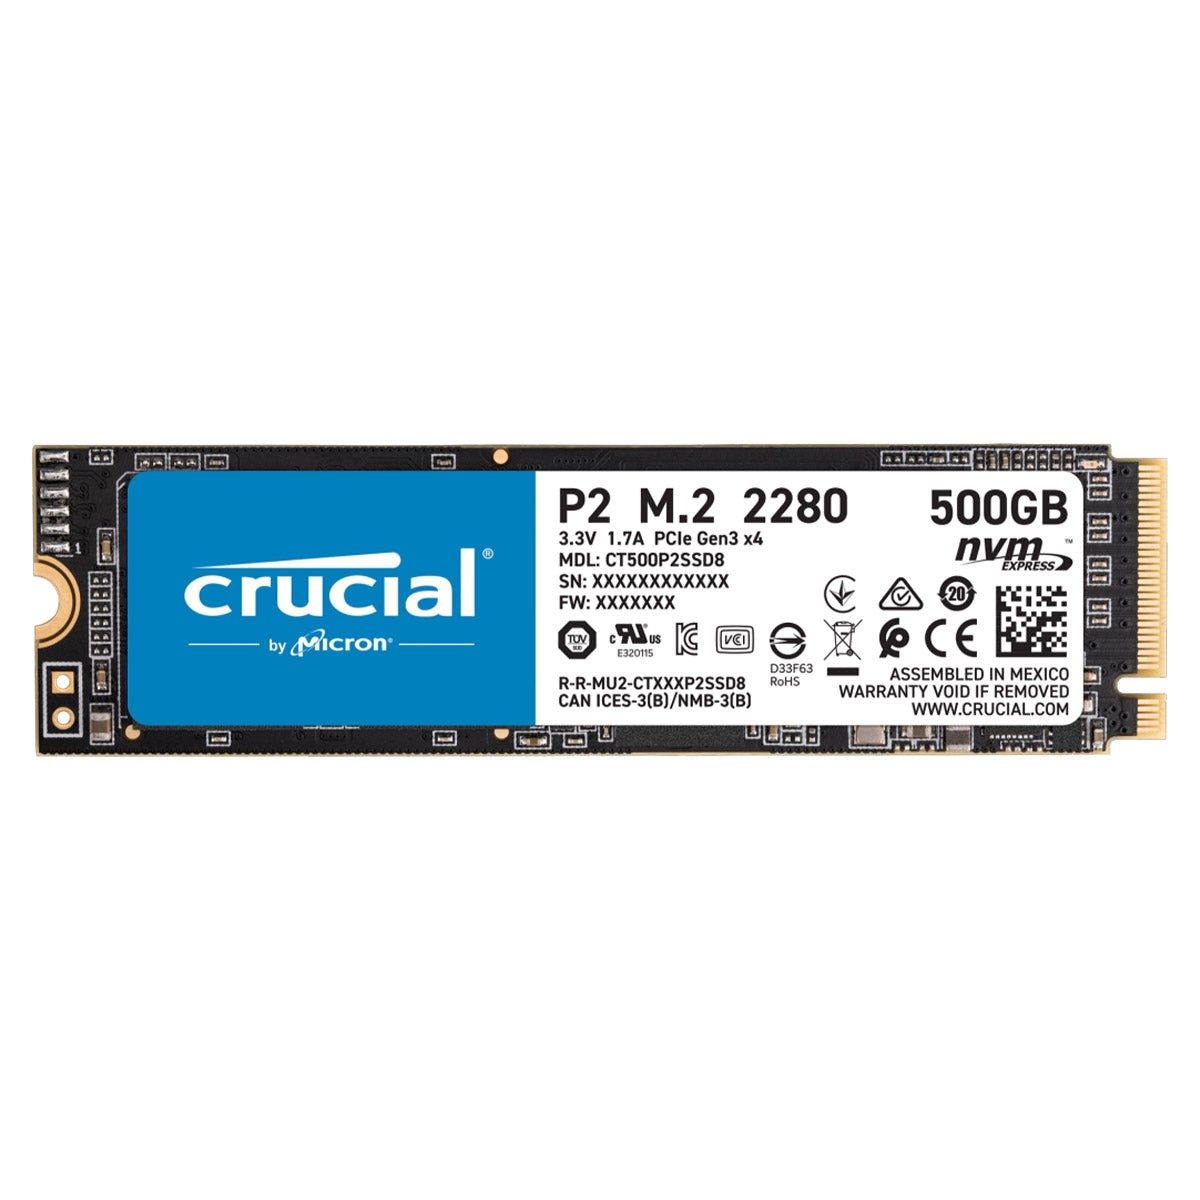 [पुन: पैक किया गया] Crucial P2 500GB M.2 2280 PCIe NVMe इंटरनल सॉलिड स्टेट ड्राइव 